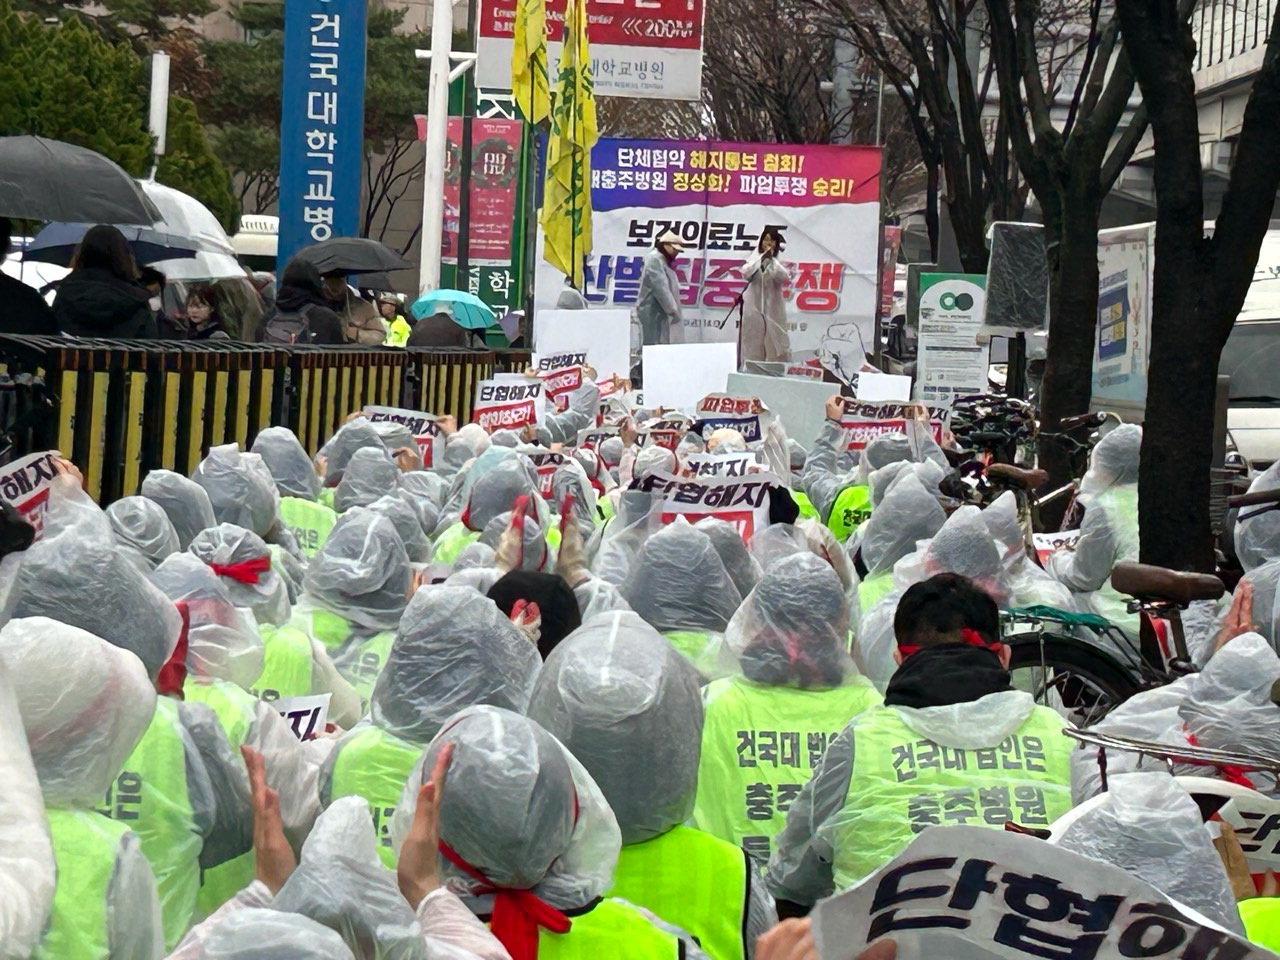 건국대 충주병원 노조원들이 15일 서울 건국대에서 상경투쟁을 벌이고 있다. /보건의료노조 건국대 충주병원지부